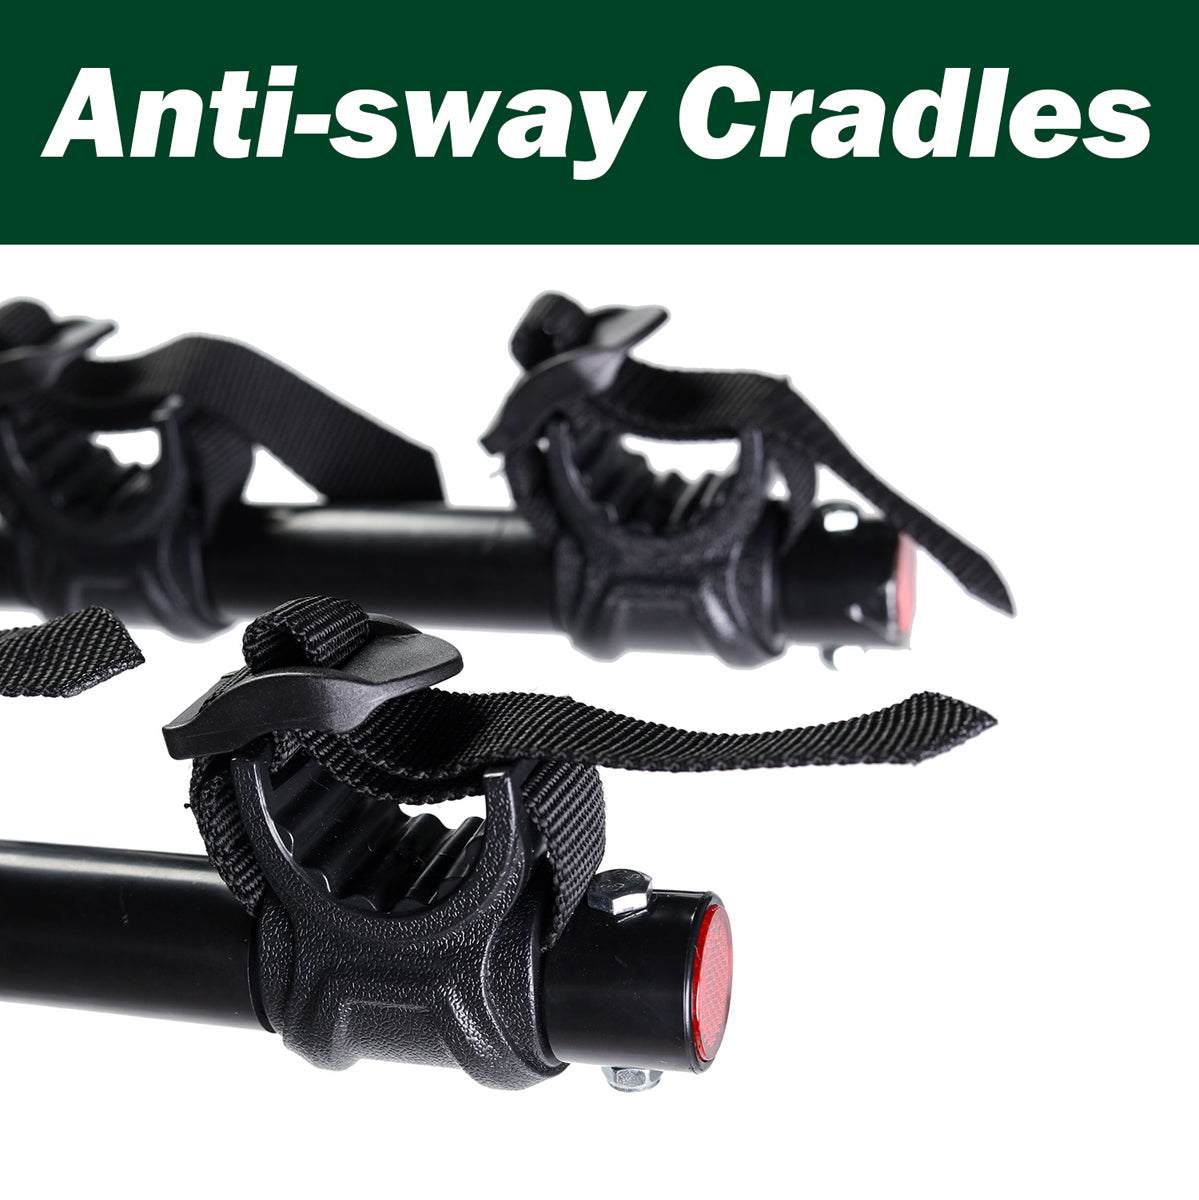 Anti-sway Cradles